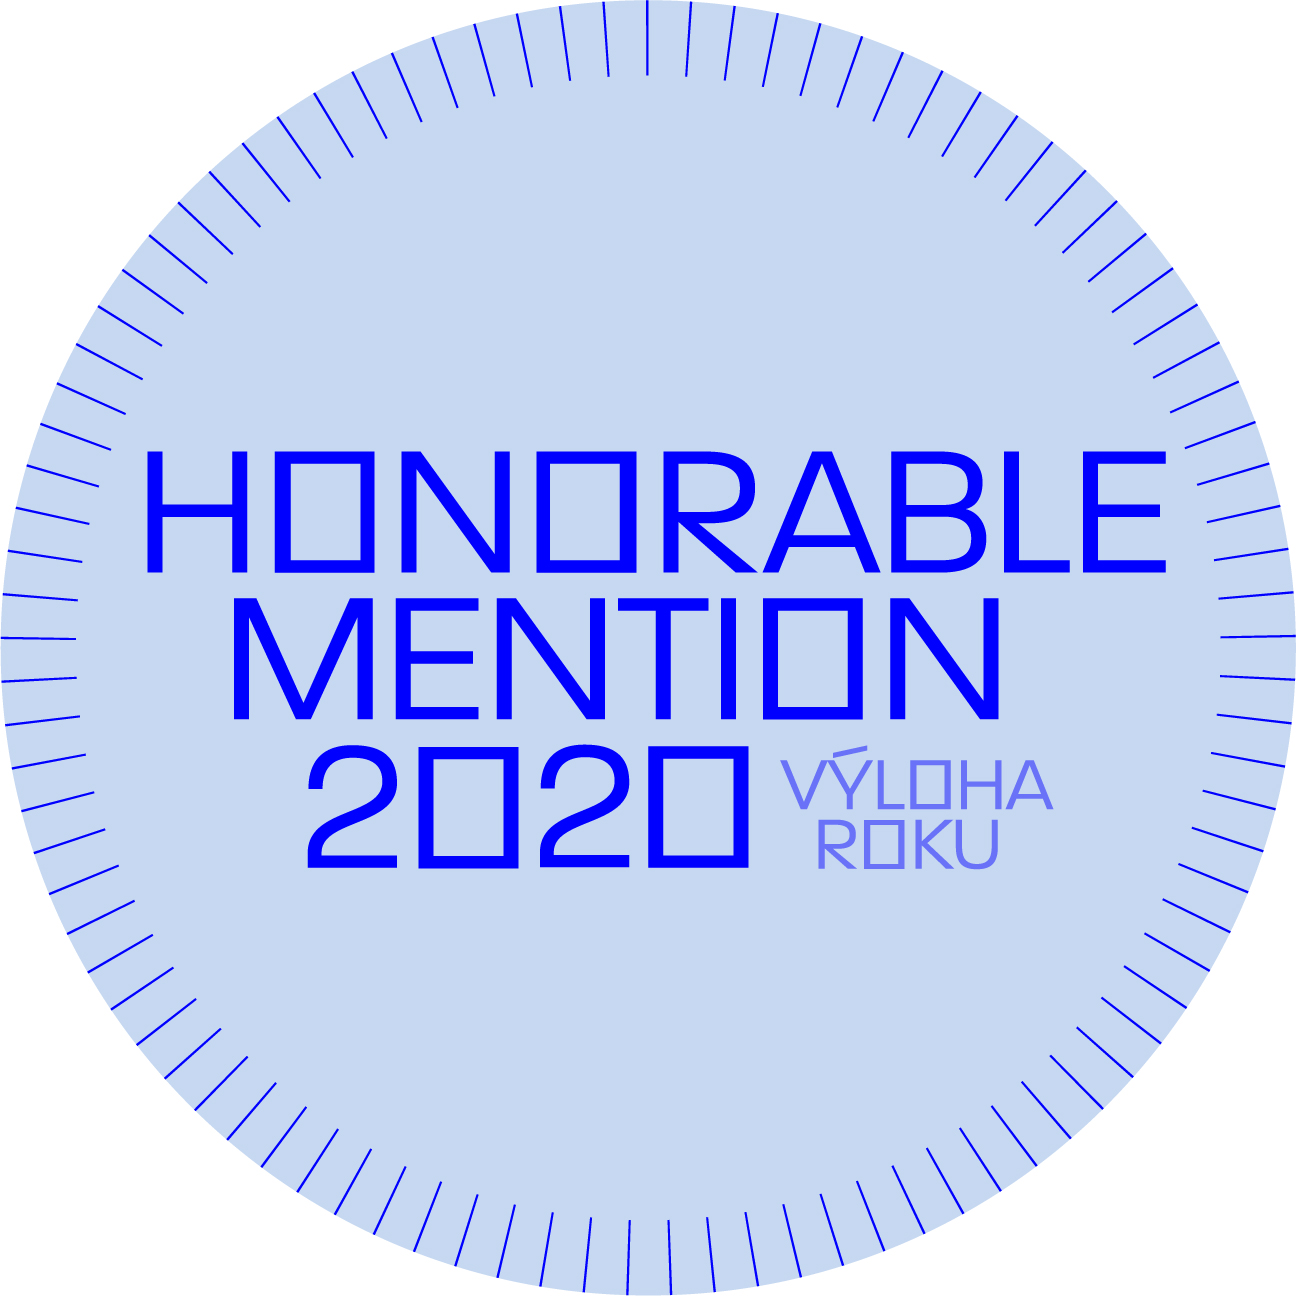 Vyloha_roku_badge_honorable_mention_2020